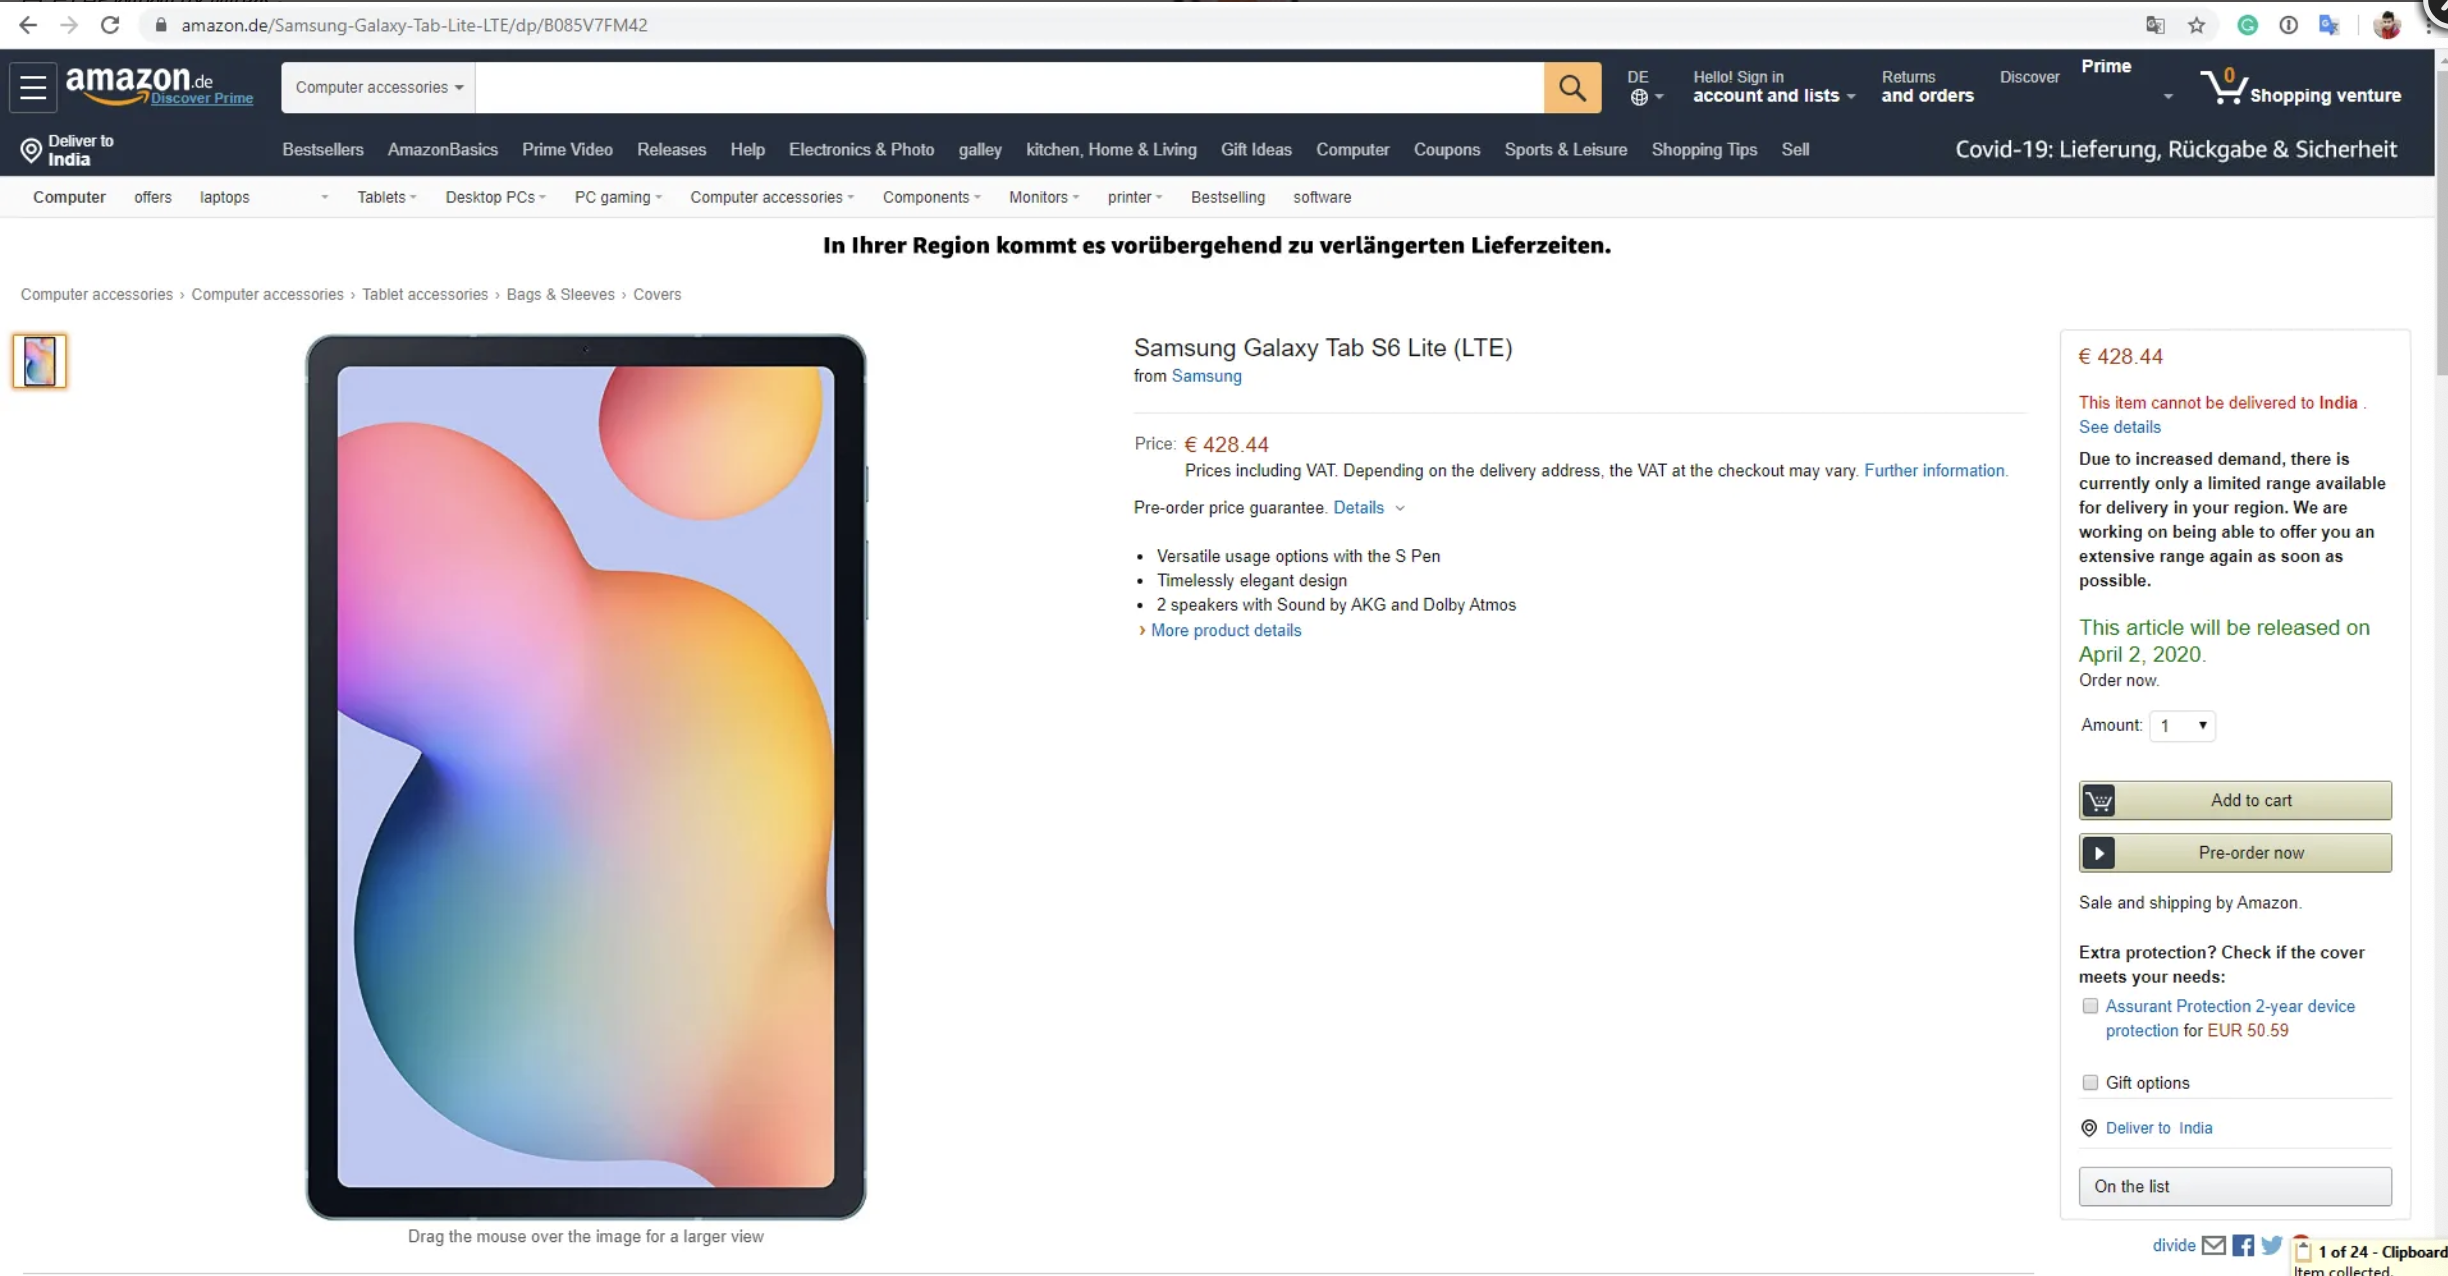 10吋大屏的平价版“iPad Pro” 三星Galaxy Tab S6 Lite意外上架亚马逊